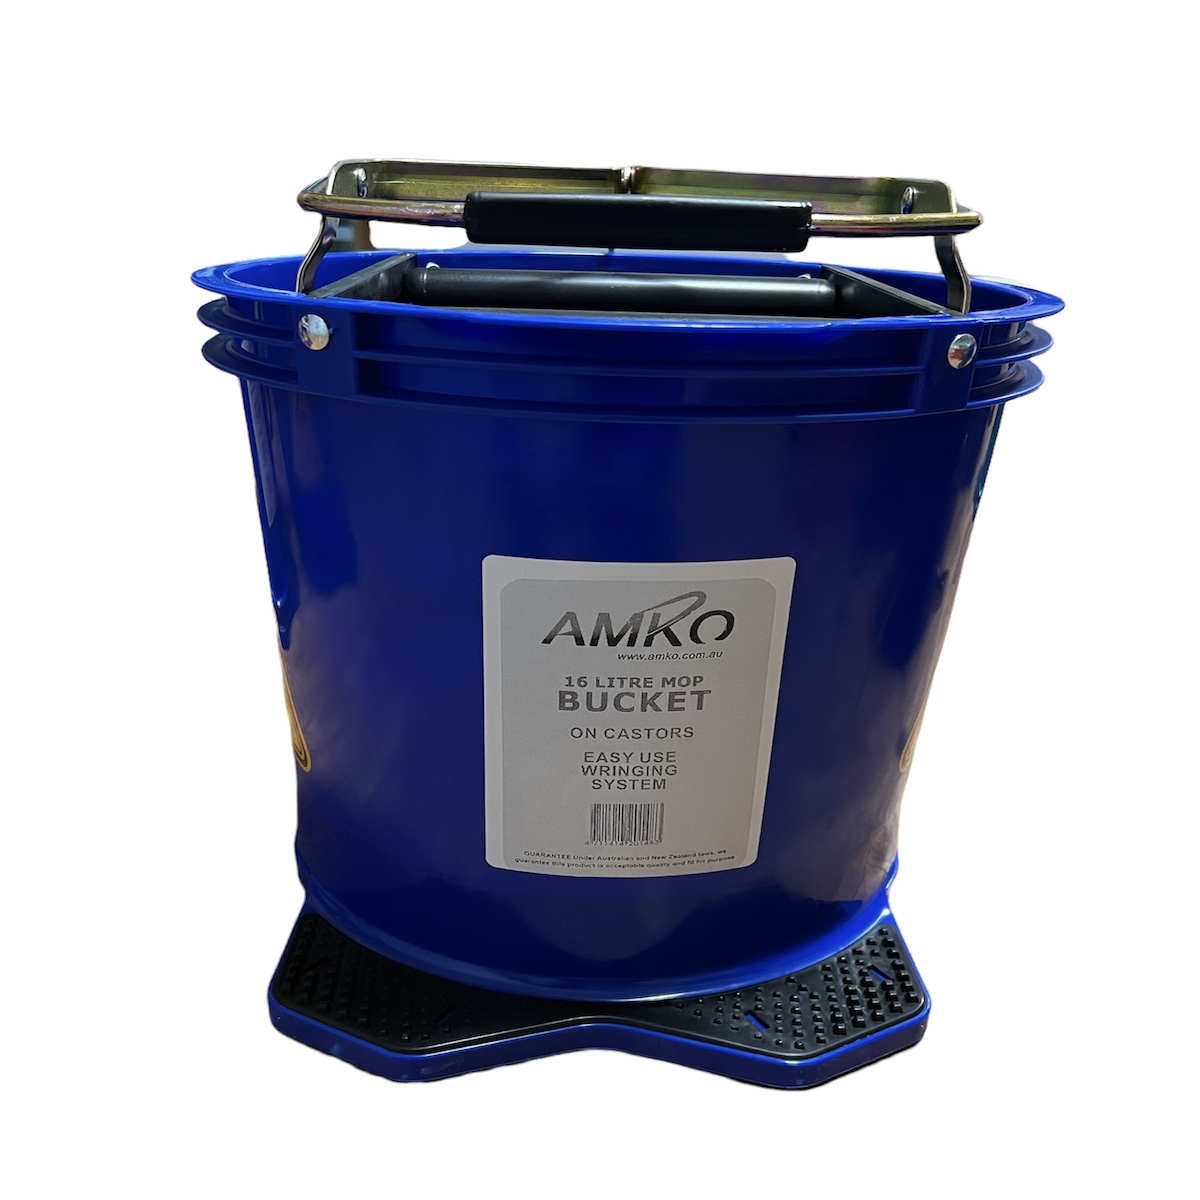 Amko blue mop Bucket